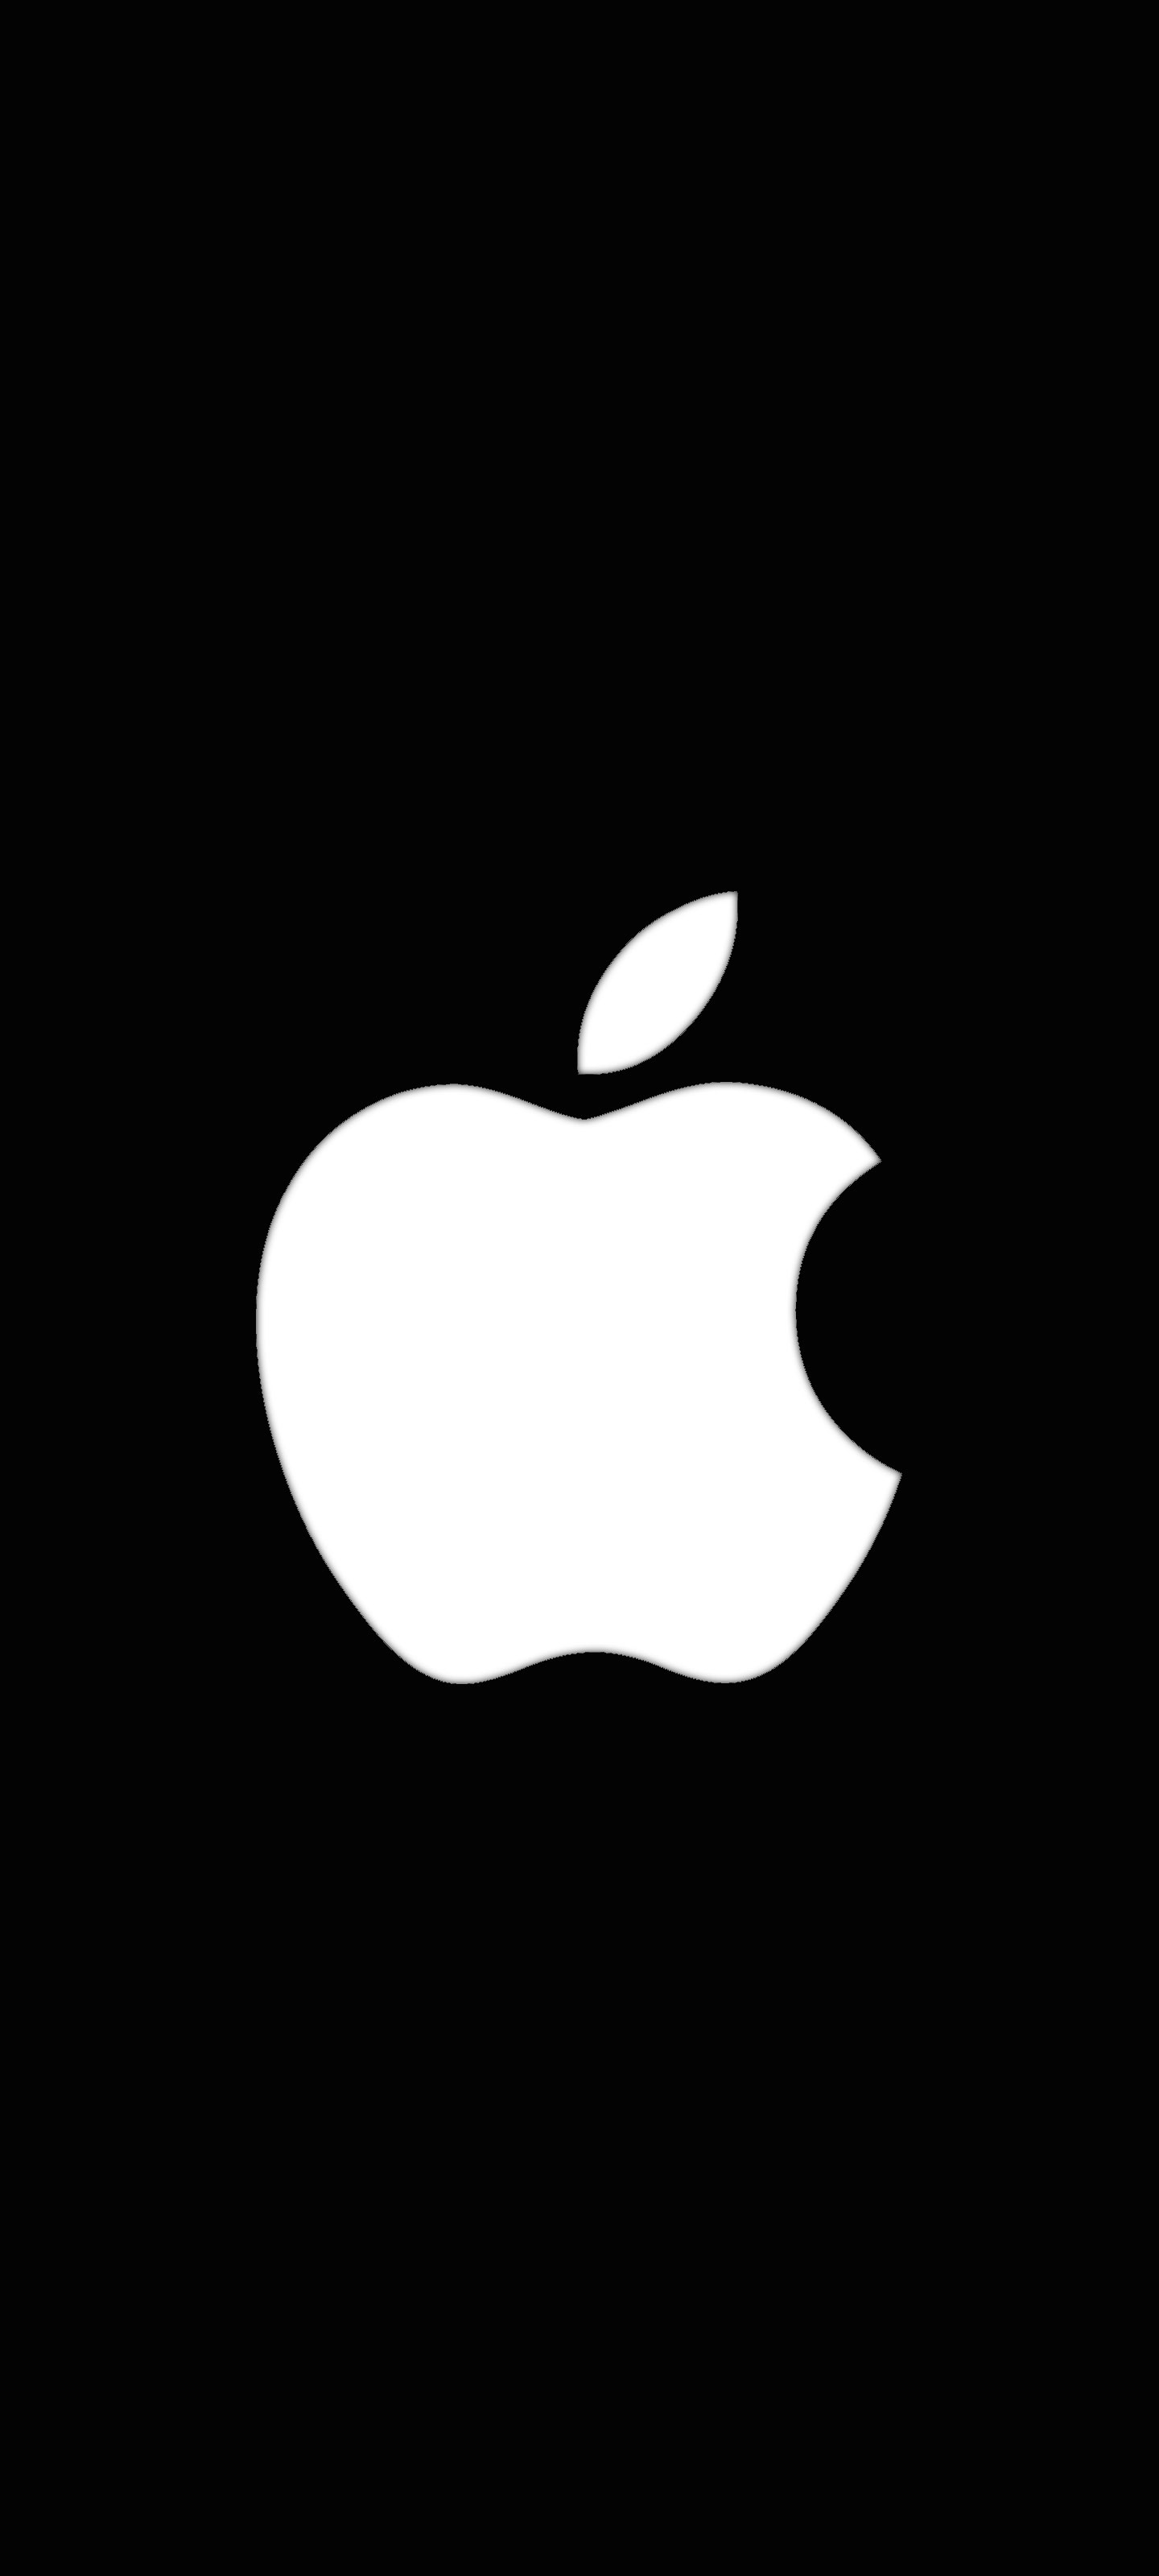 アップル Apple ロゴ の無料待ち受け画像 スマホ壁紙 Iphone Android 1 待ち受けparadise